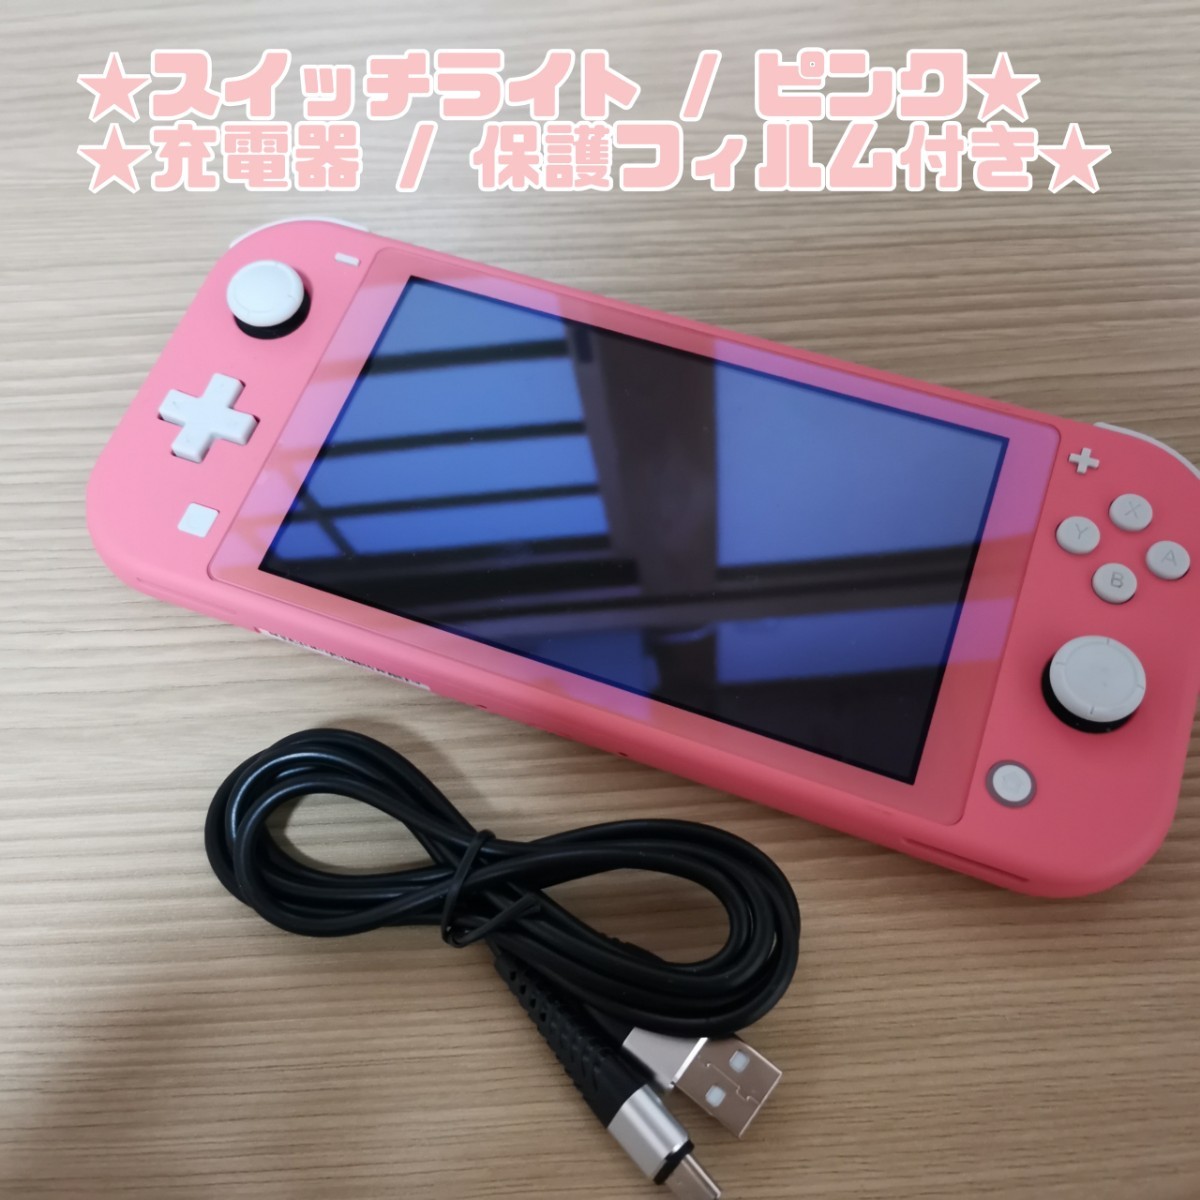 宅送] Nintendo Switch Lite コーラルピンク 充電器付 235 asakusa.sub.jp